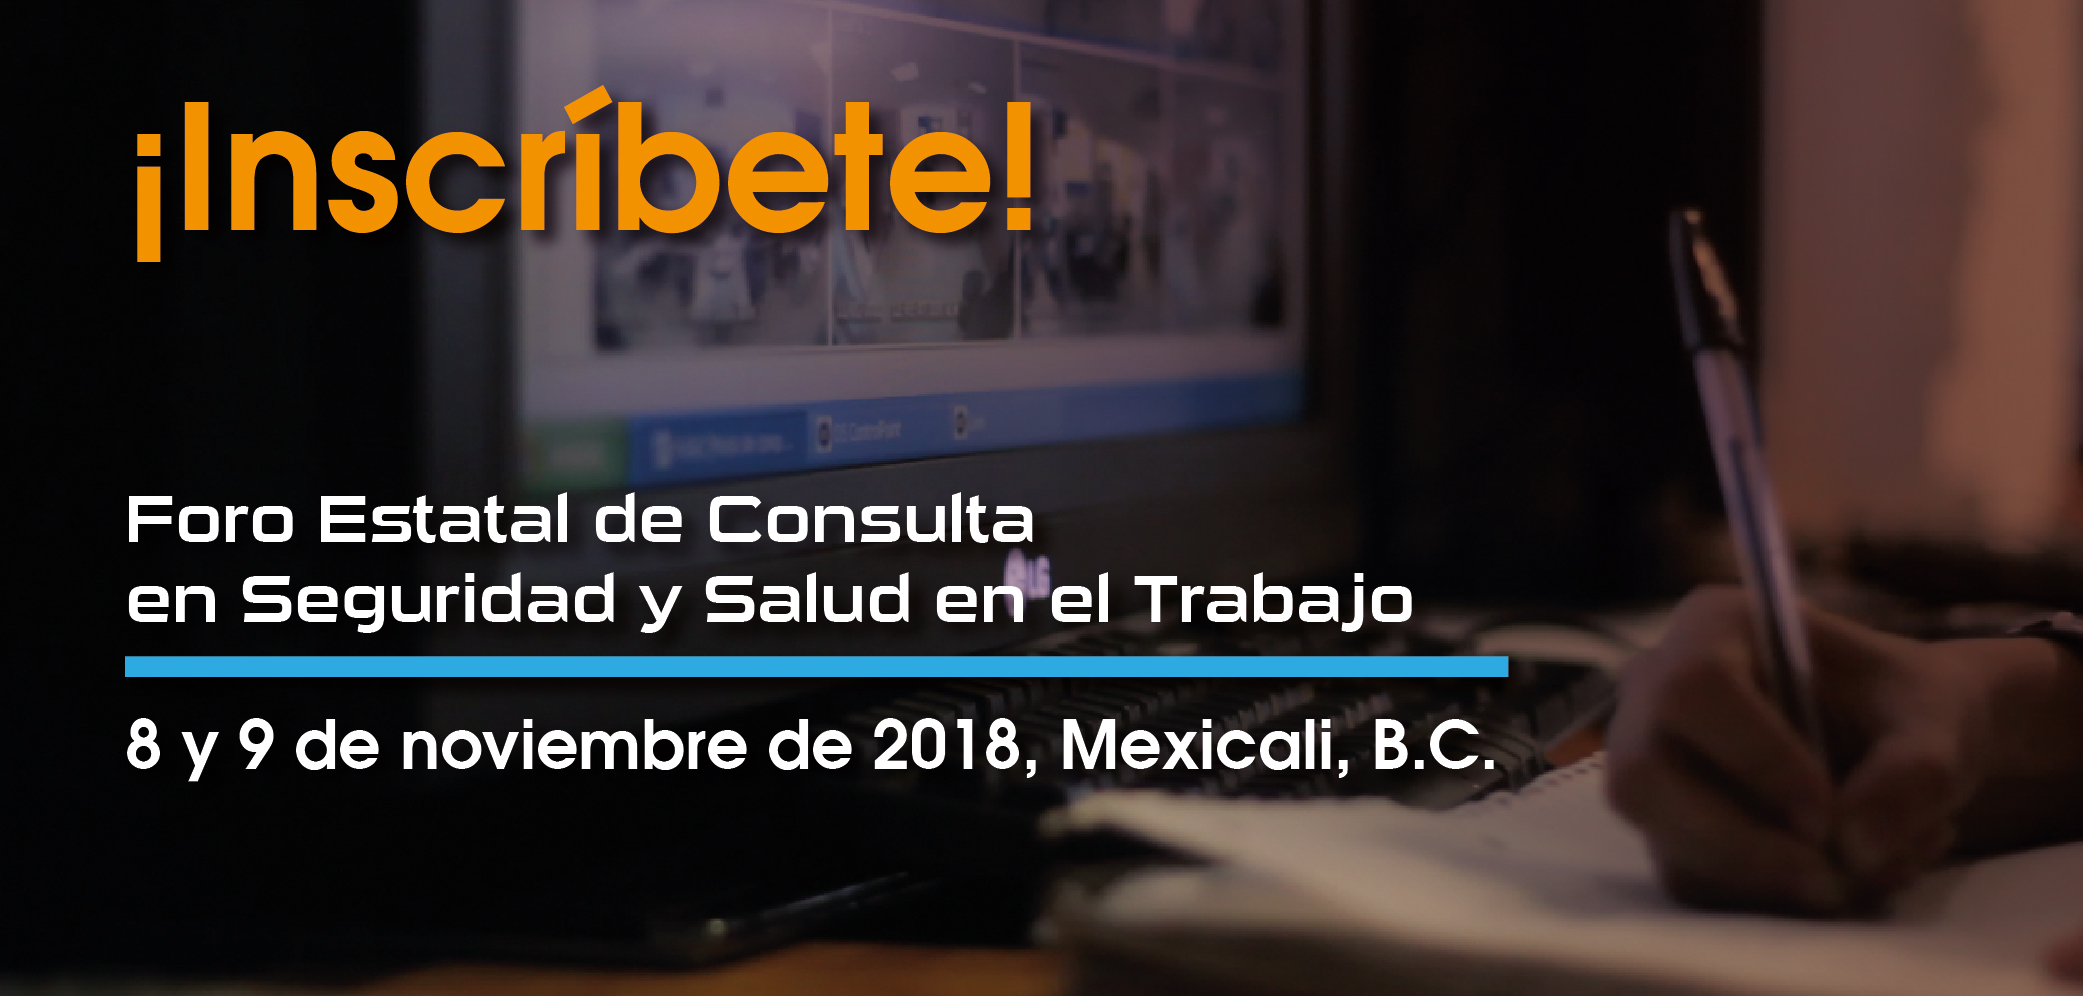 Imagen Gráfica con la leyenda
¡Inscríbete! Foro Estatal de consulta en Seguridad y Salud en el Trabajo
8 y 9 de noviembre de 2018, Mexicali. Baja California